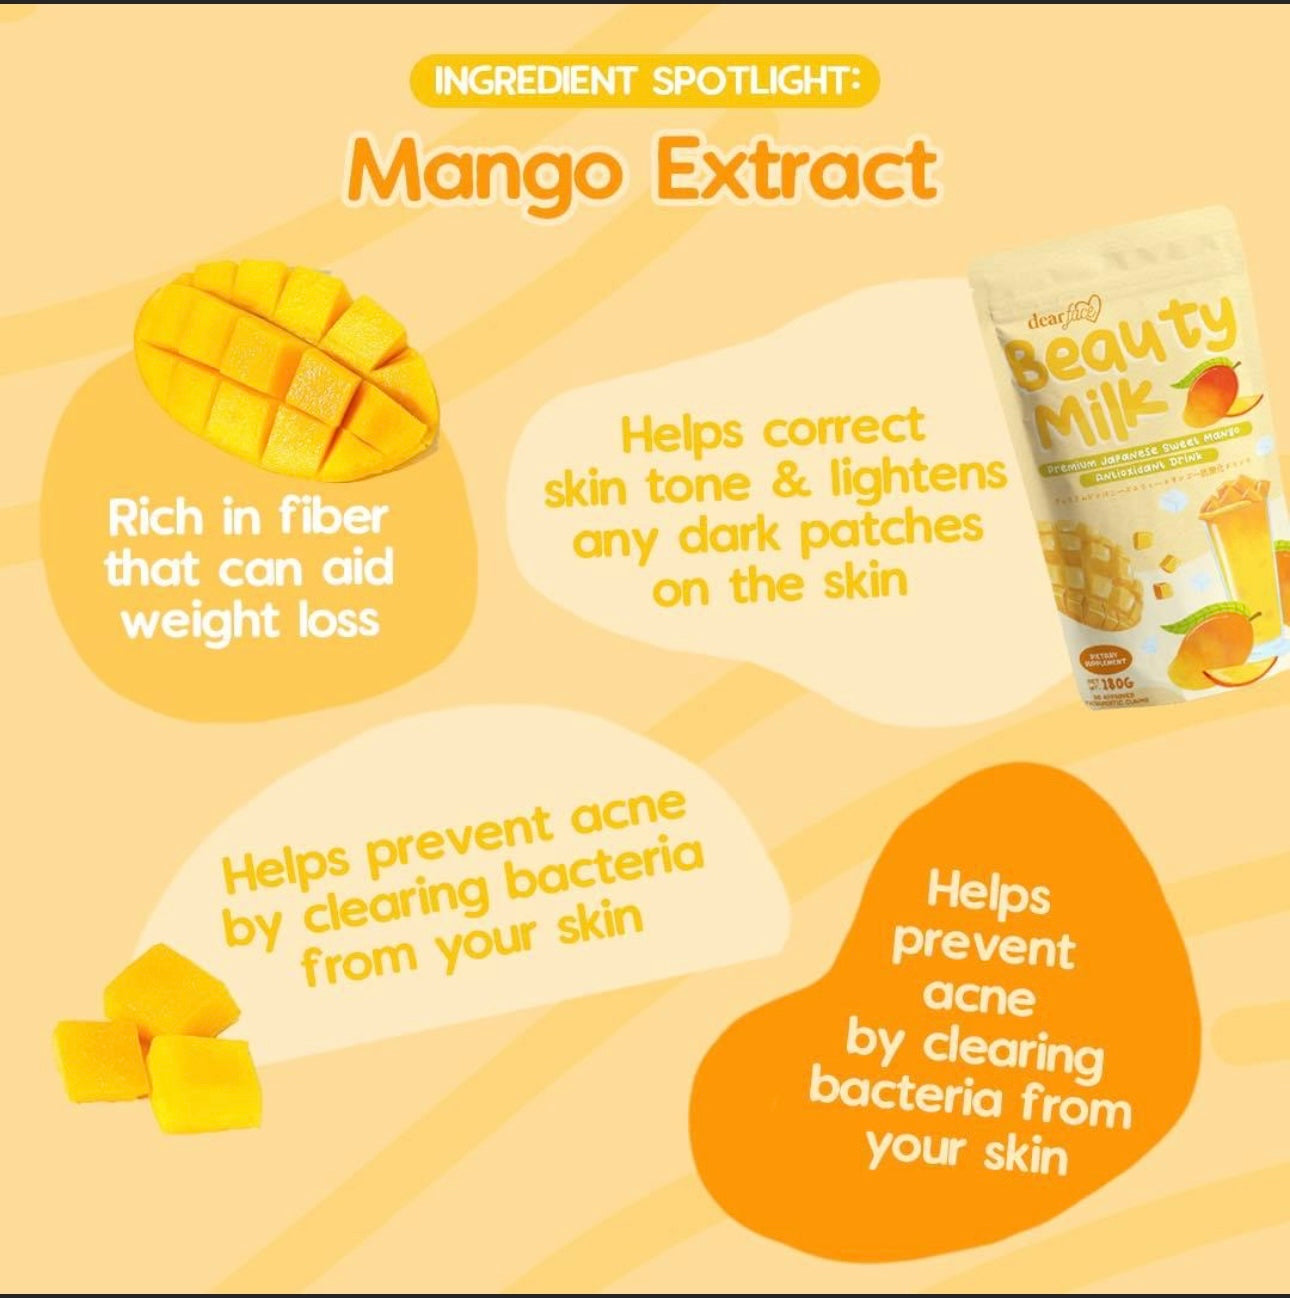 Dear Face Beauty Milk Mango Collagen Antioxidant